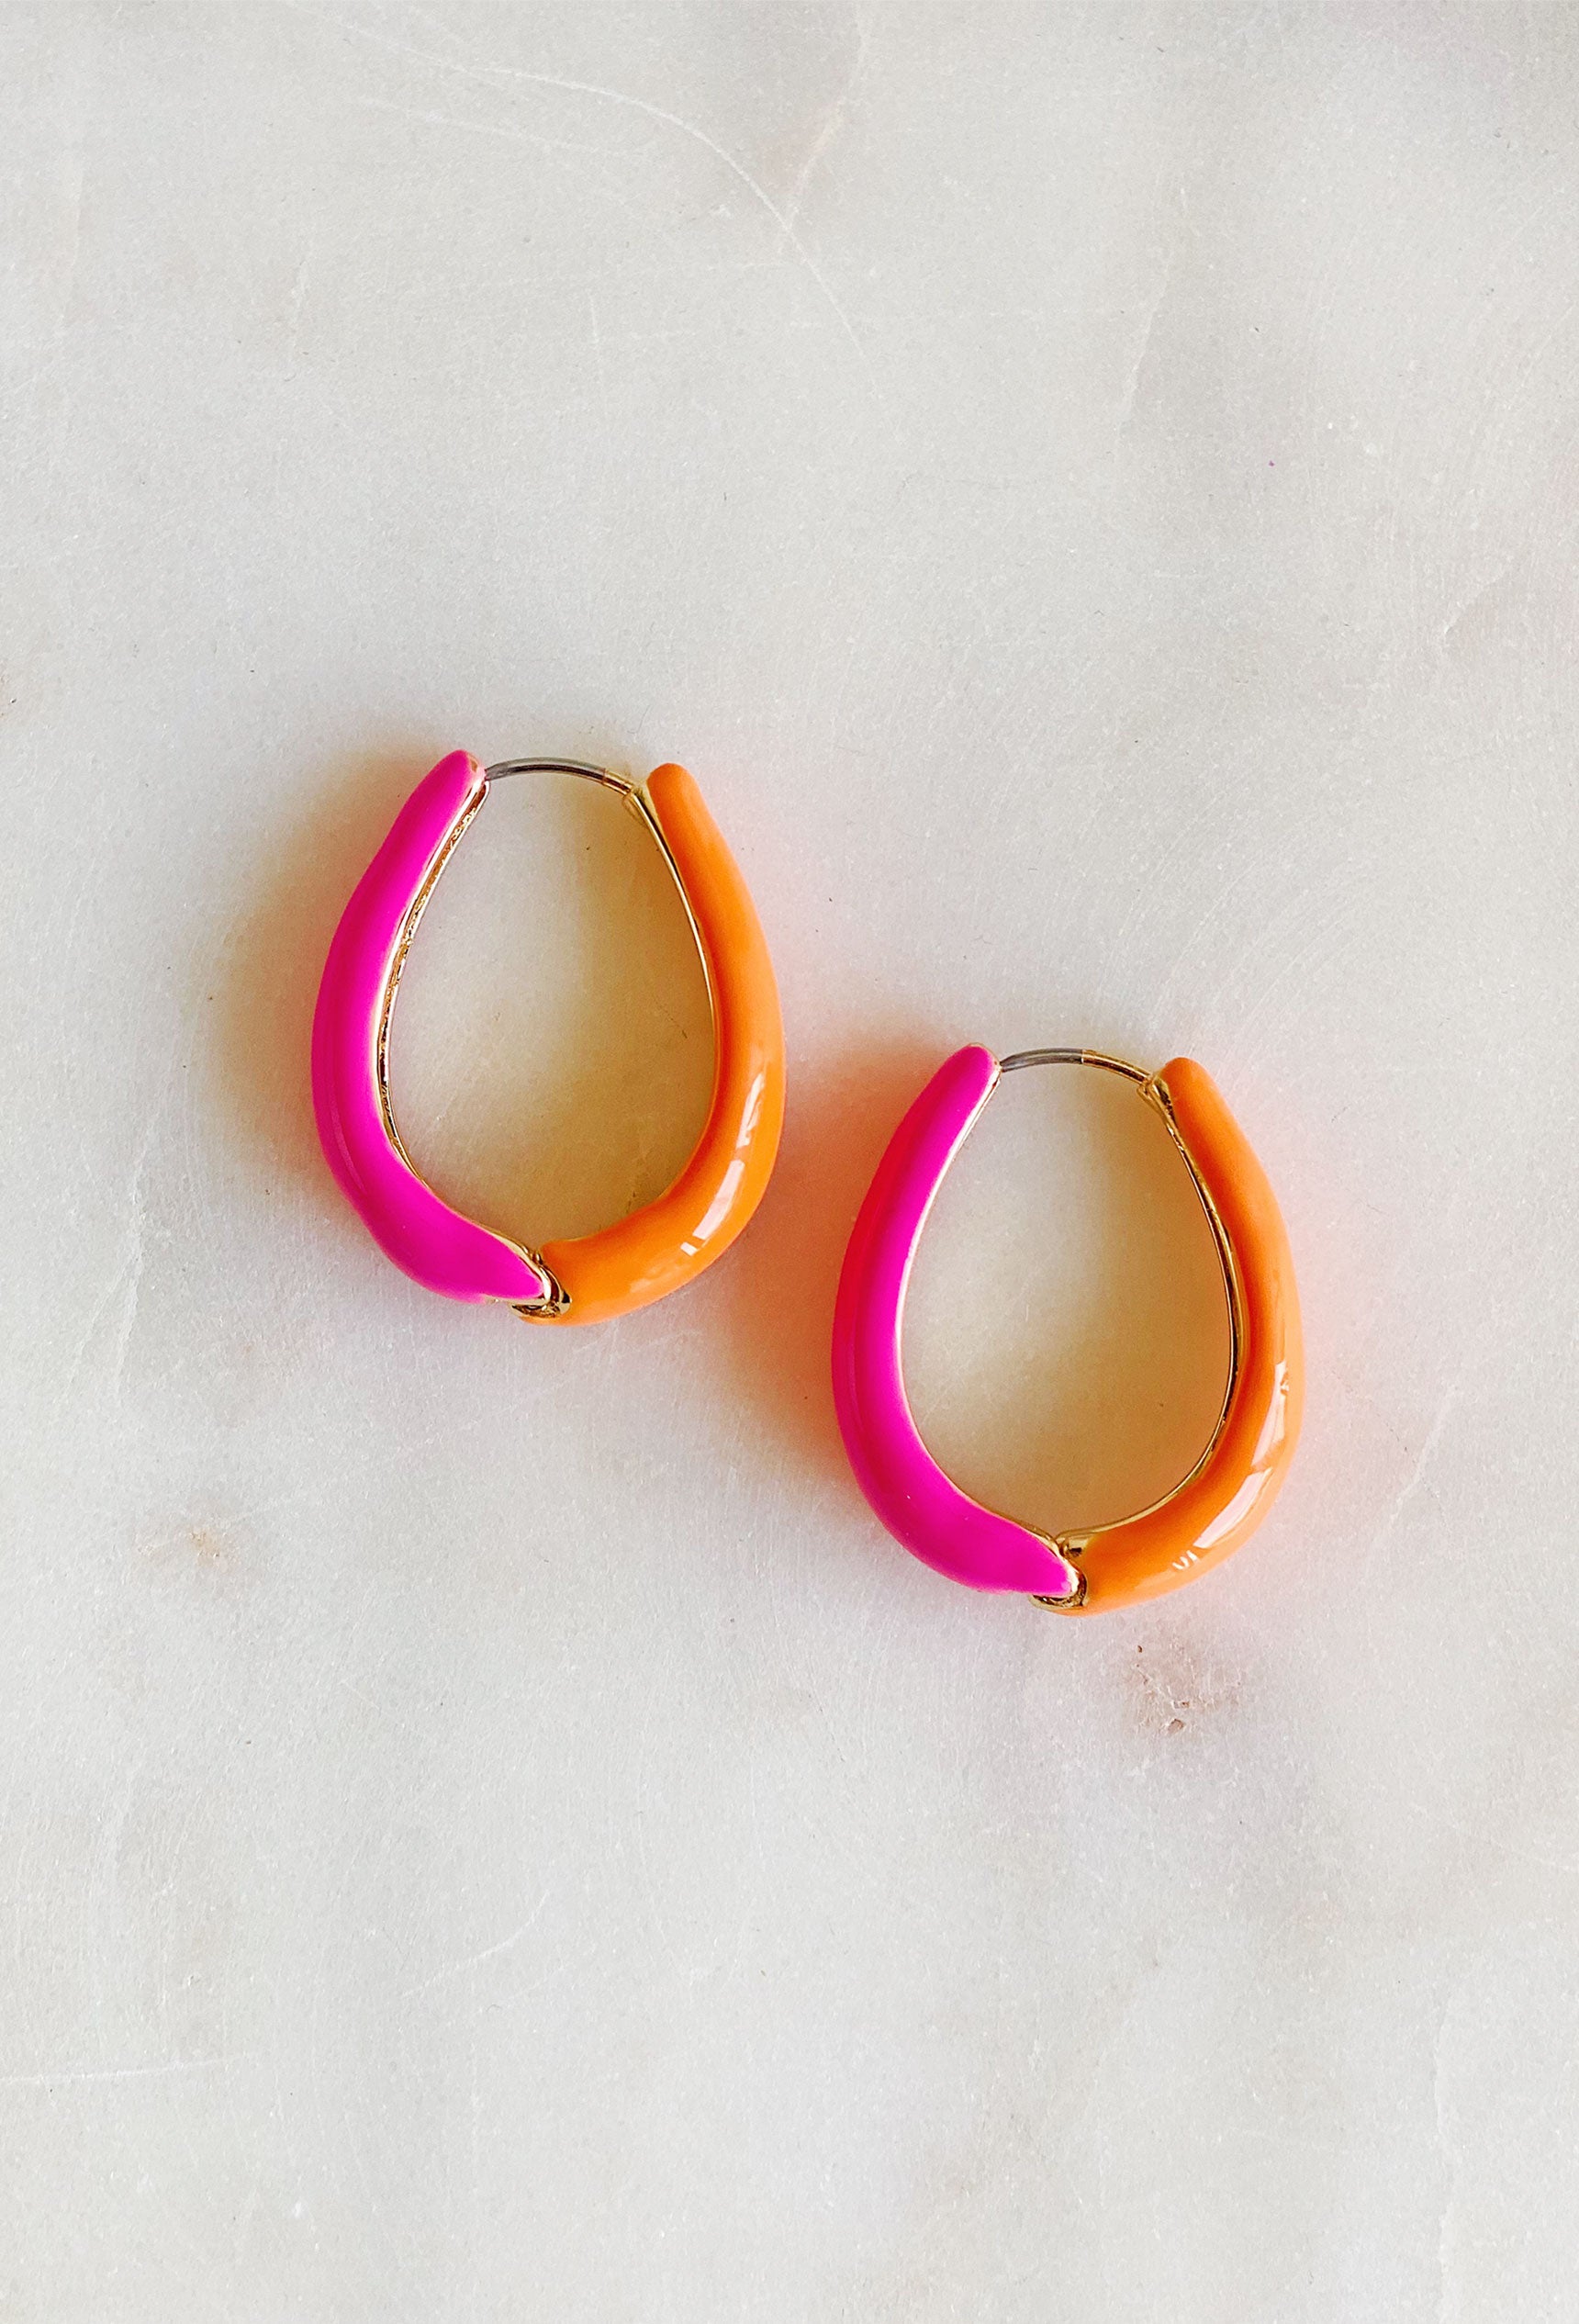 On Sunshine Time Earrings, half pink and half orange hoop earrings